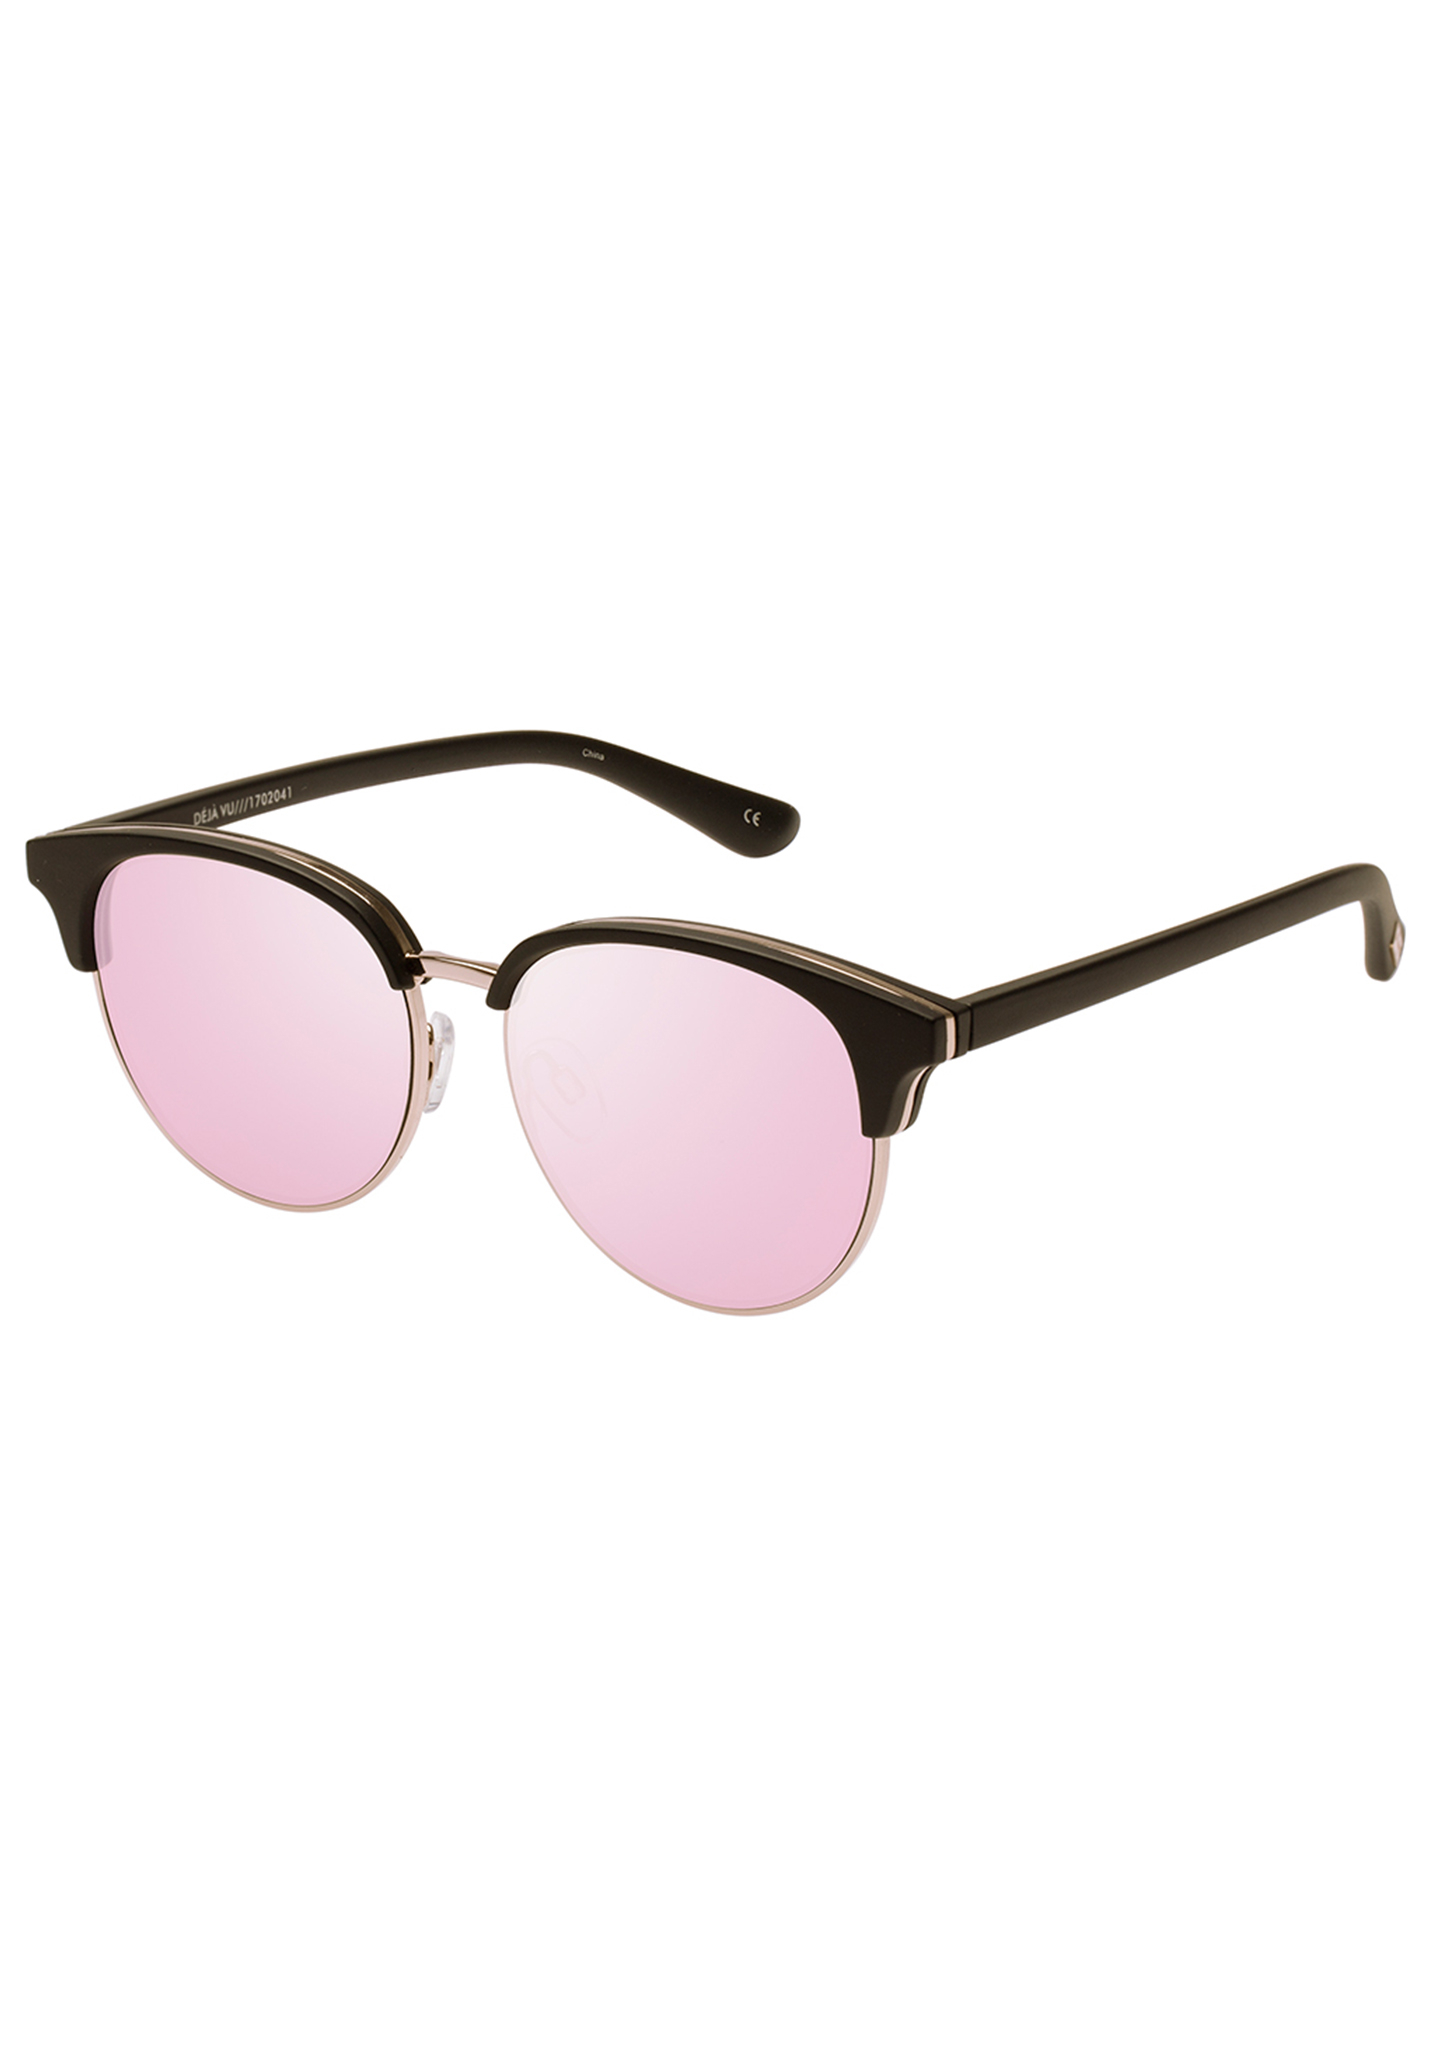 Le Specs Déja Vu Sonnenbrillen schwarzer gummi / pfirsichfarbene revo-spiegelscheibe One Size